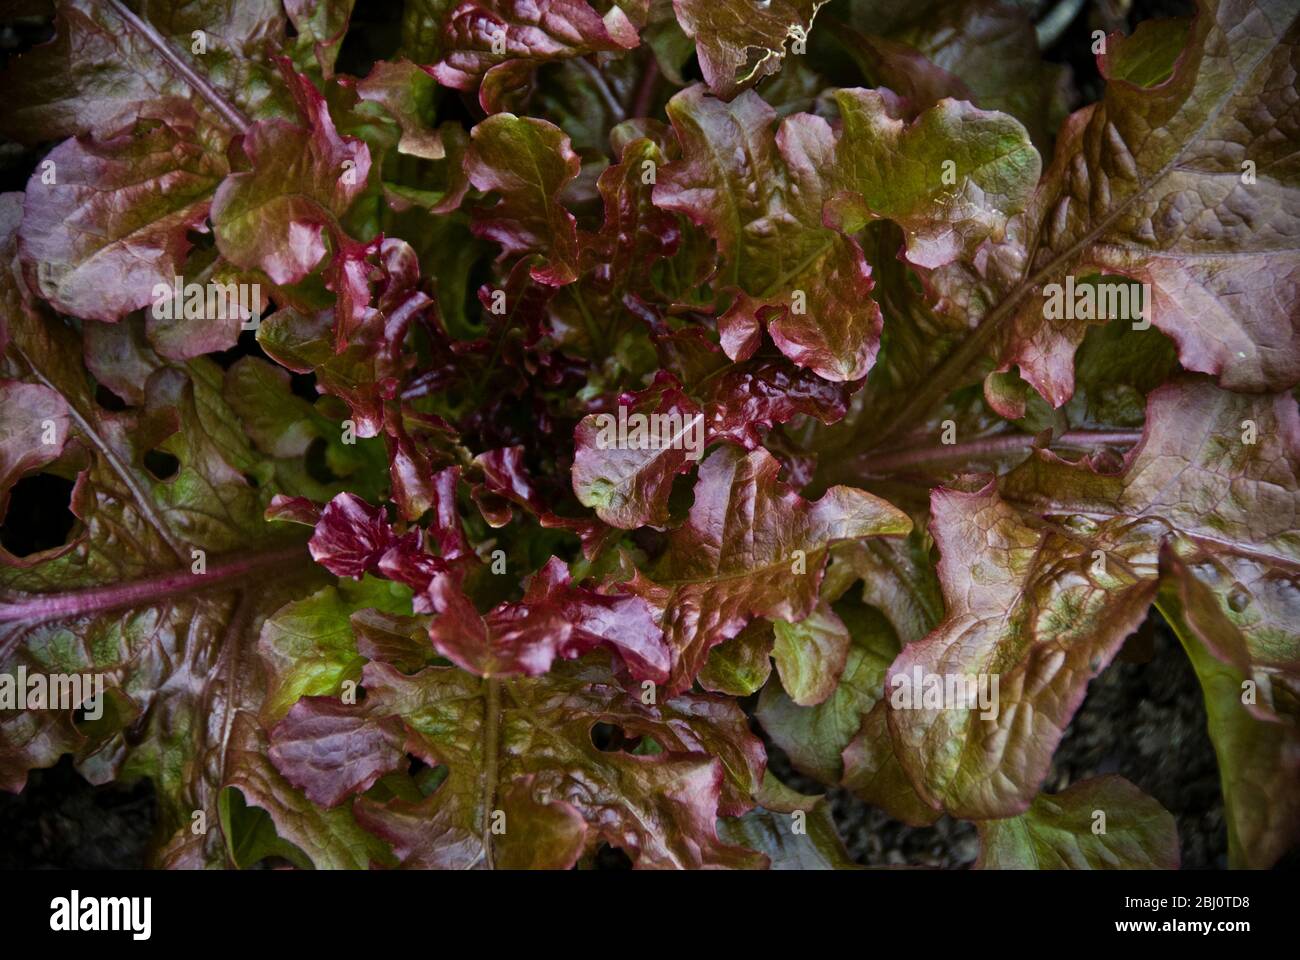 Oak leaf lettuce growing in garden - Stock Photo